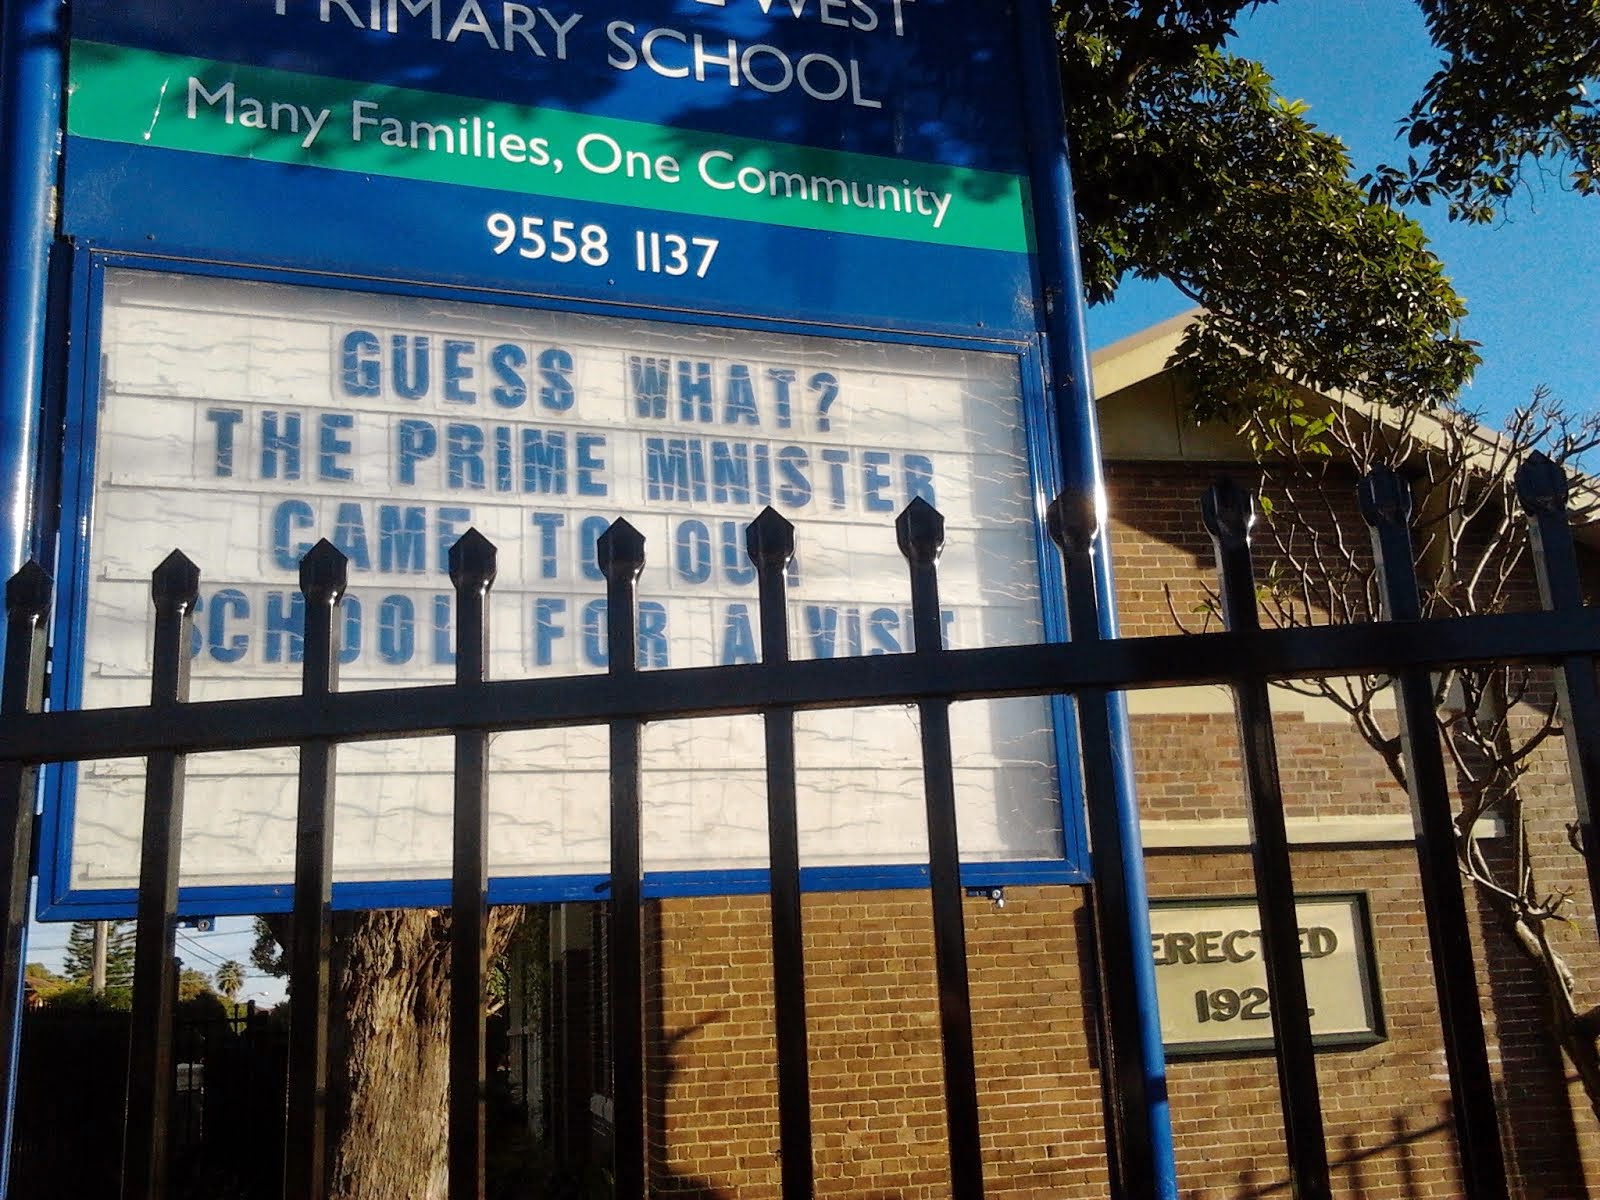 Marrickville West Primary School